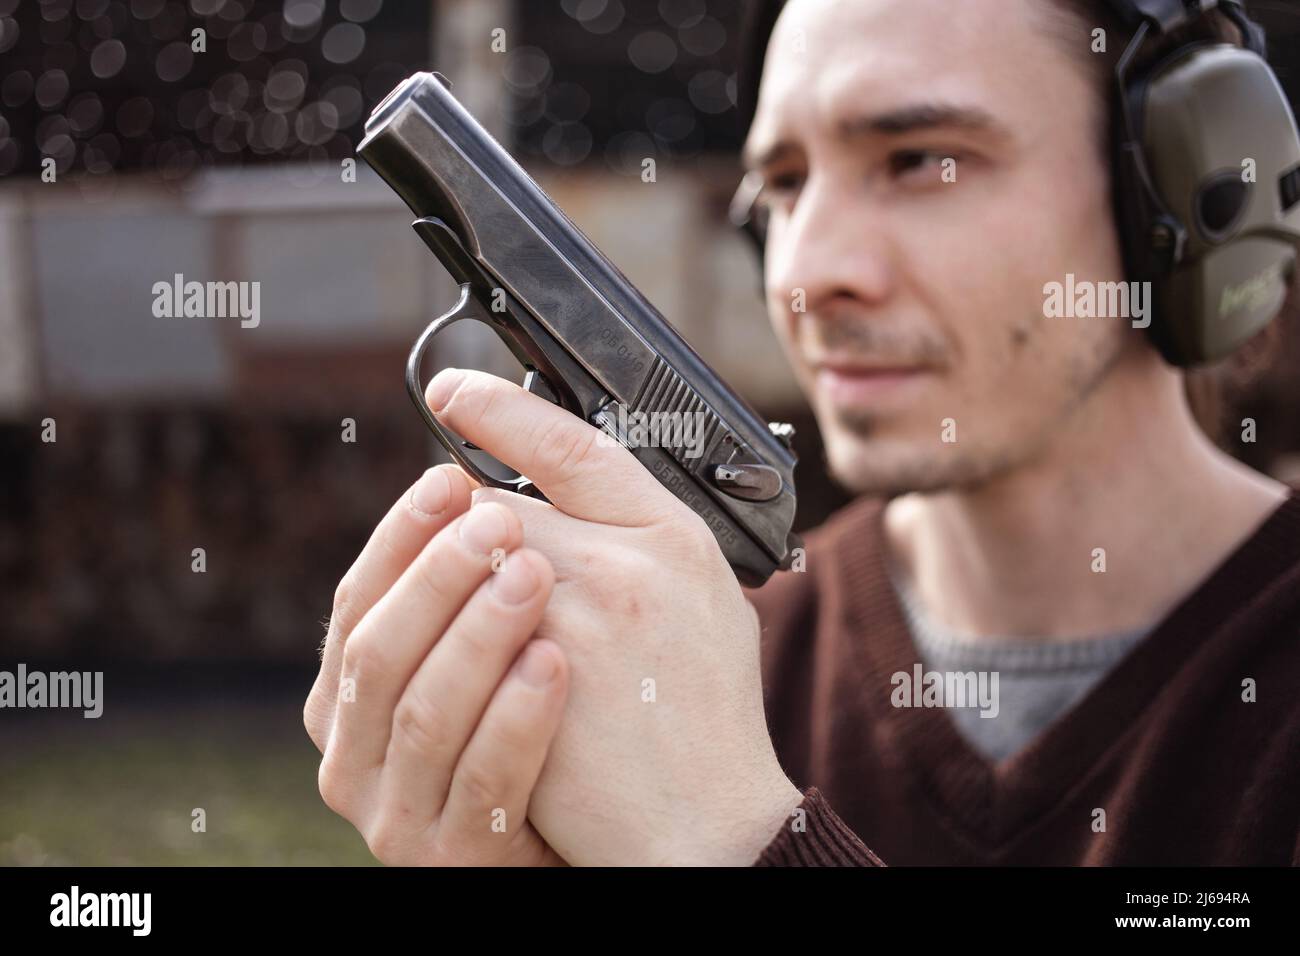 Un jeune homme tire un fusil, visant la cible. Un homme portant un casque de protection. Un mur et un toit avec trous de balle. Copie de plage de prise de vue en extérieur Banque D'Images